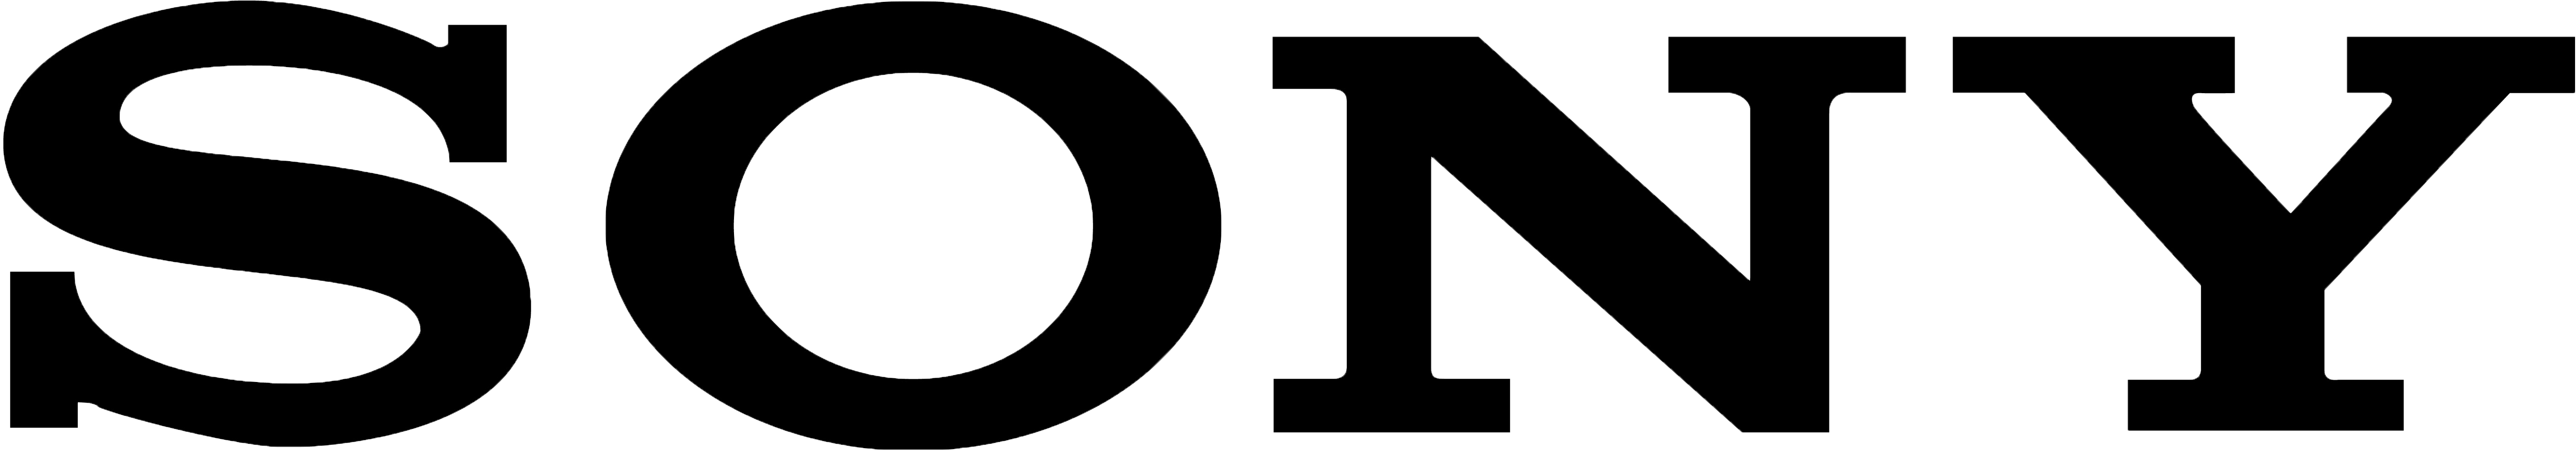 sony logo download sony logo 